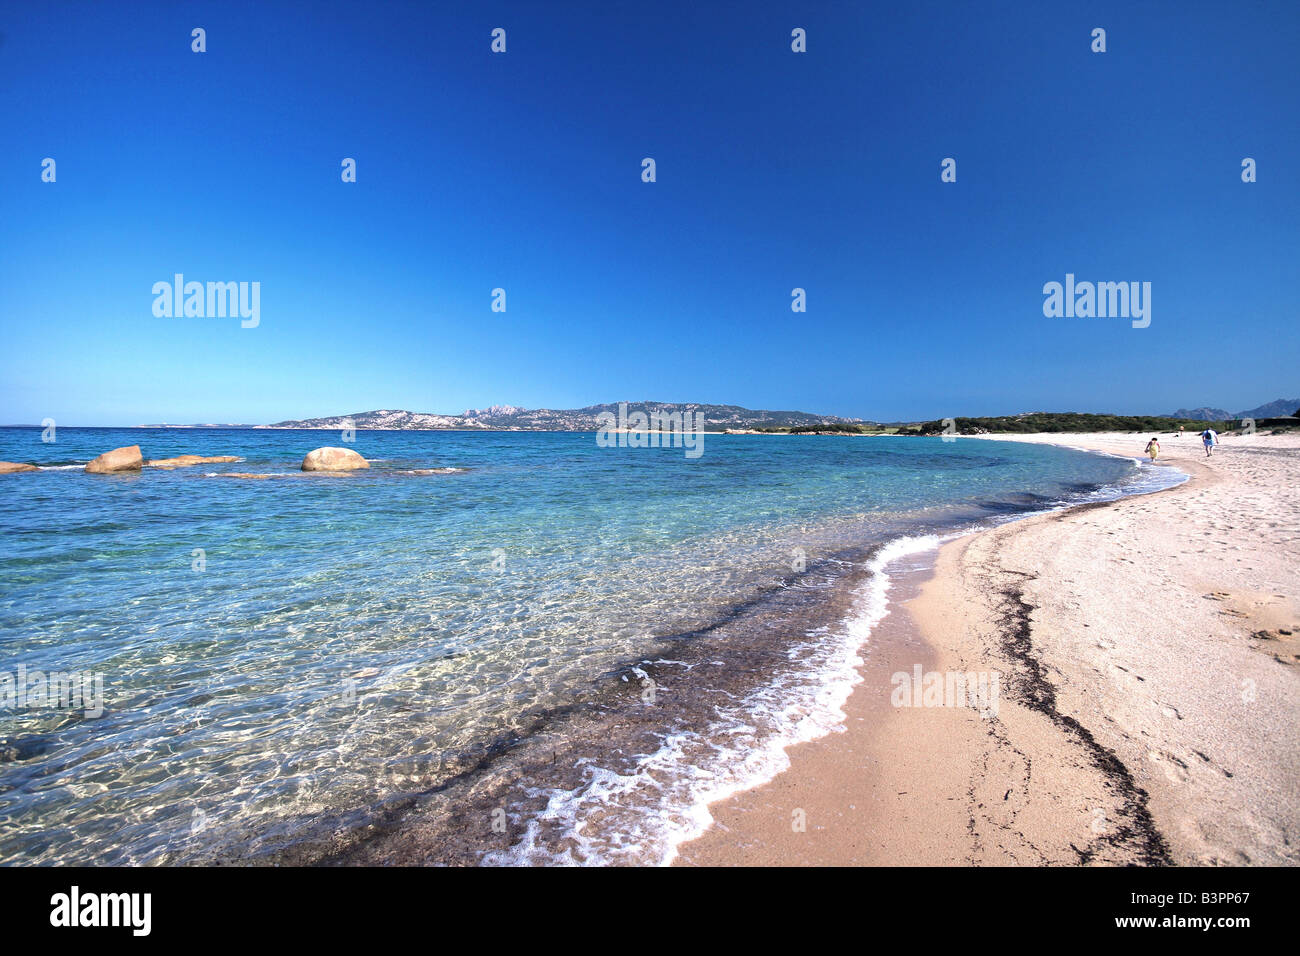 Barca Bruciata beach, Arzachena, Sardinia, Italy Stock Photo